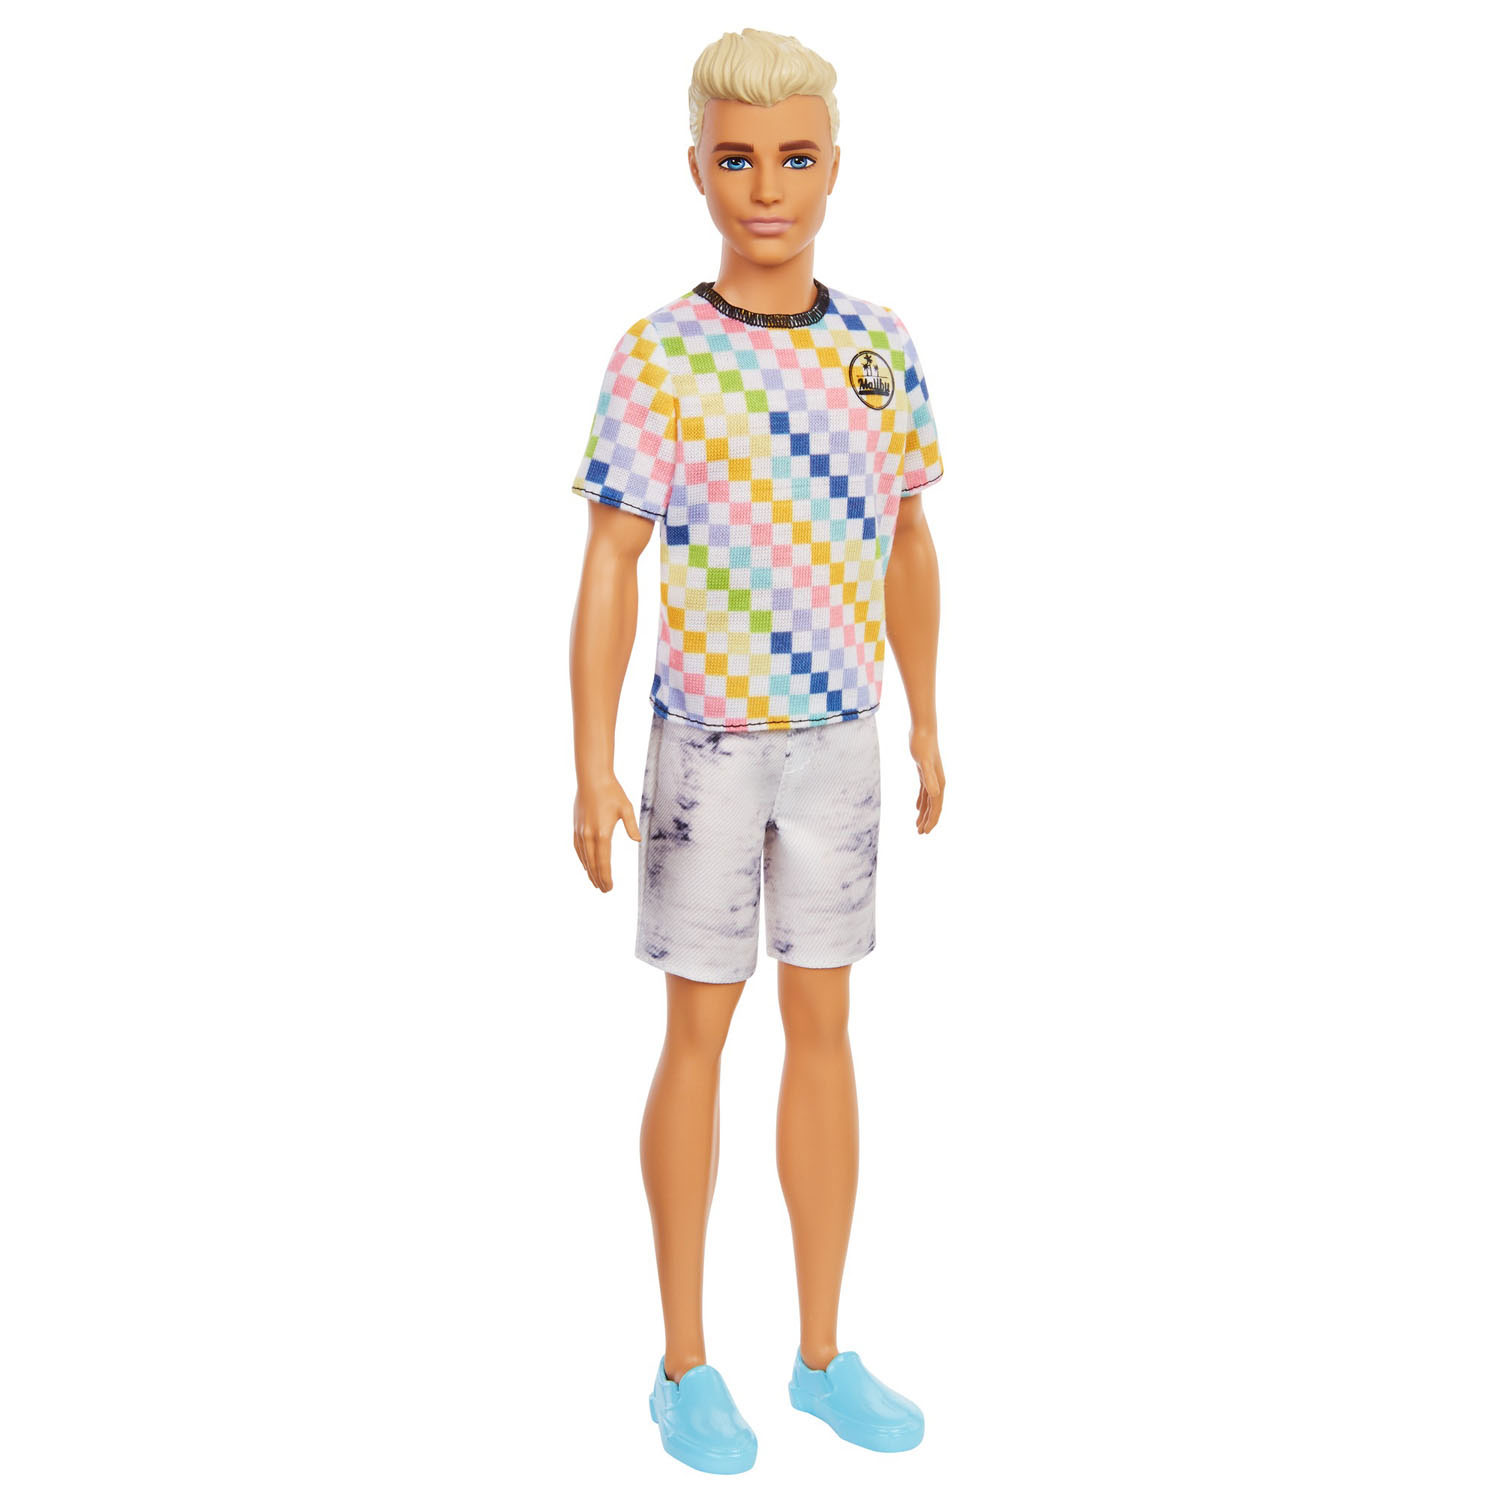 Kwijtschelding badge Wirwar Barbie Ken Fashionista Doll - checkered shirt & shorts | Thimble Toys